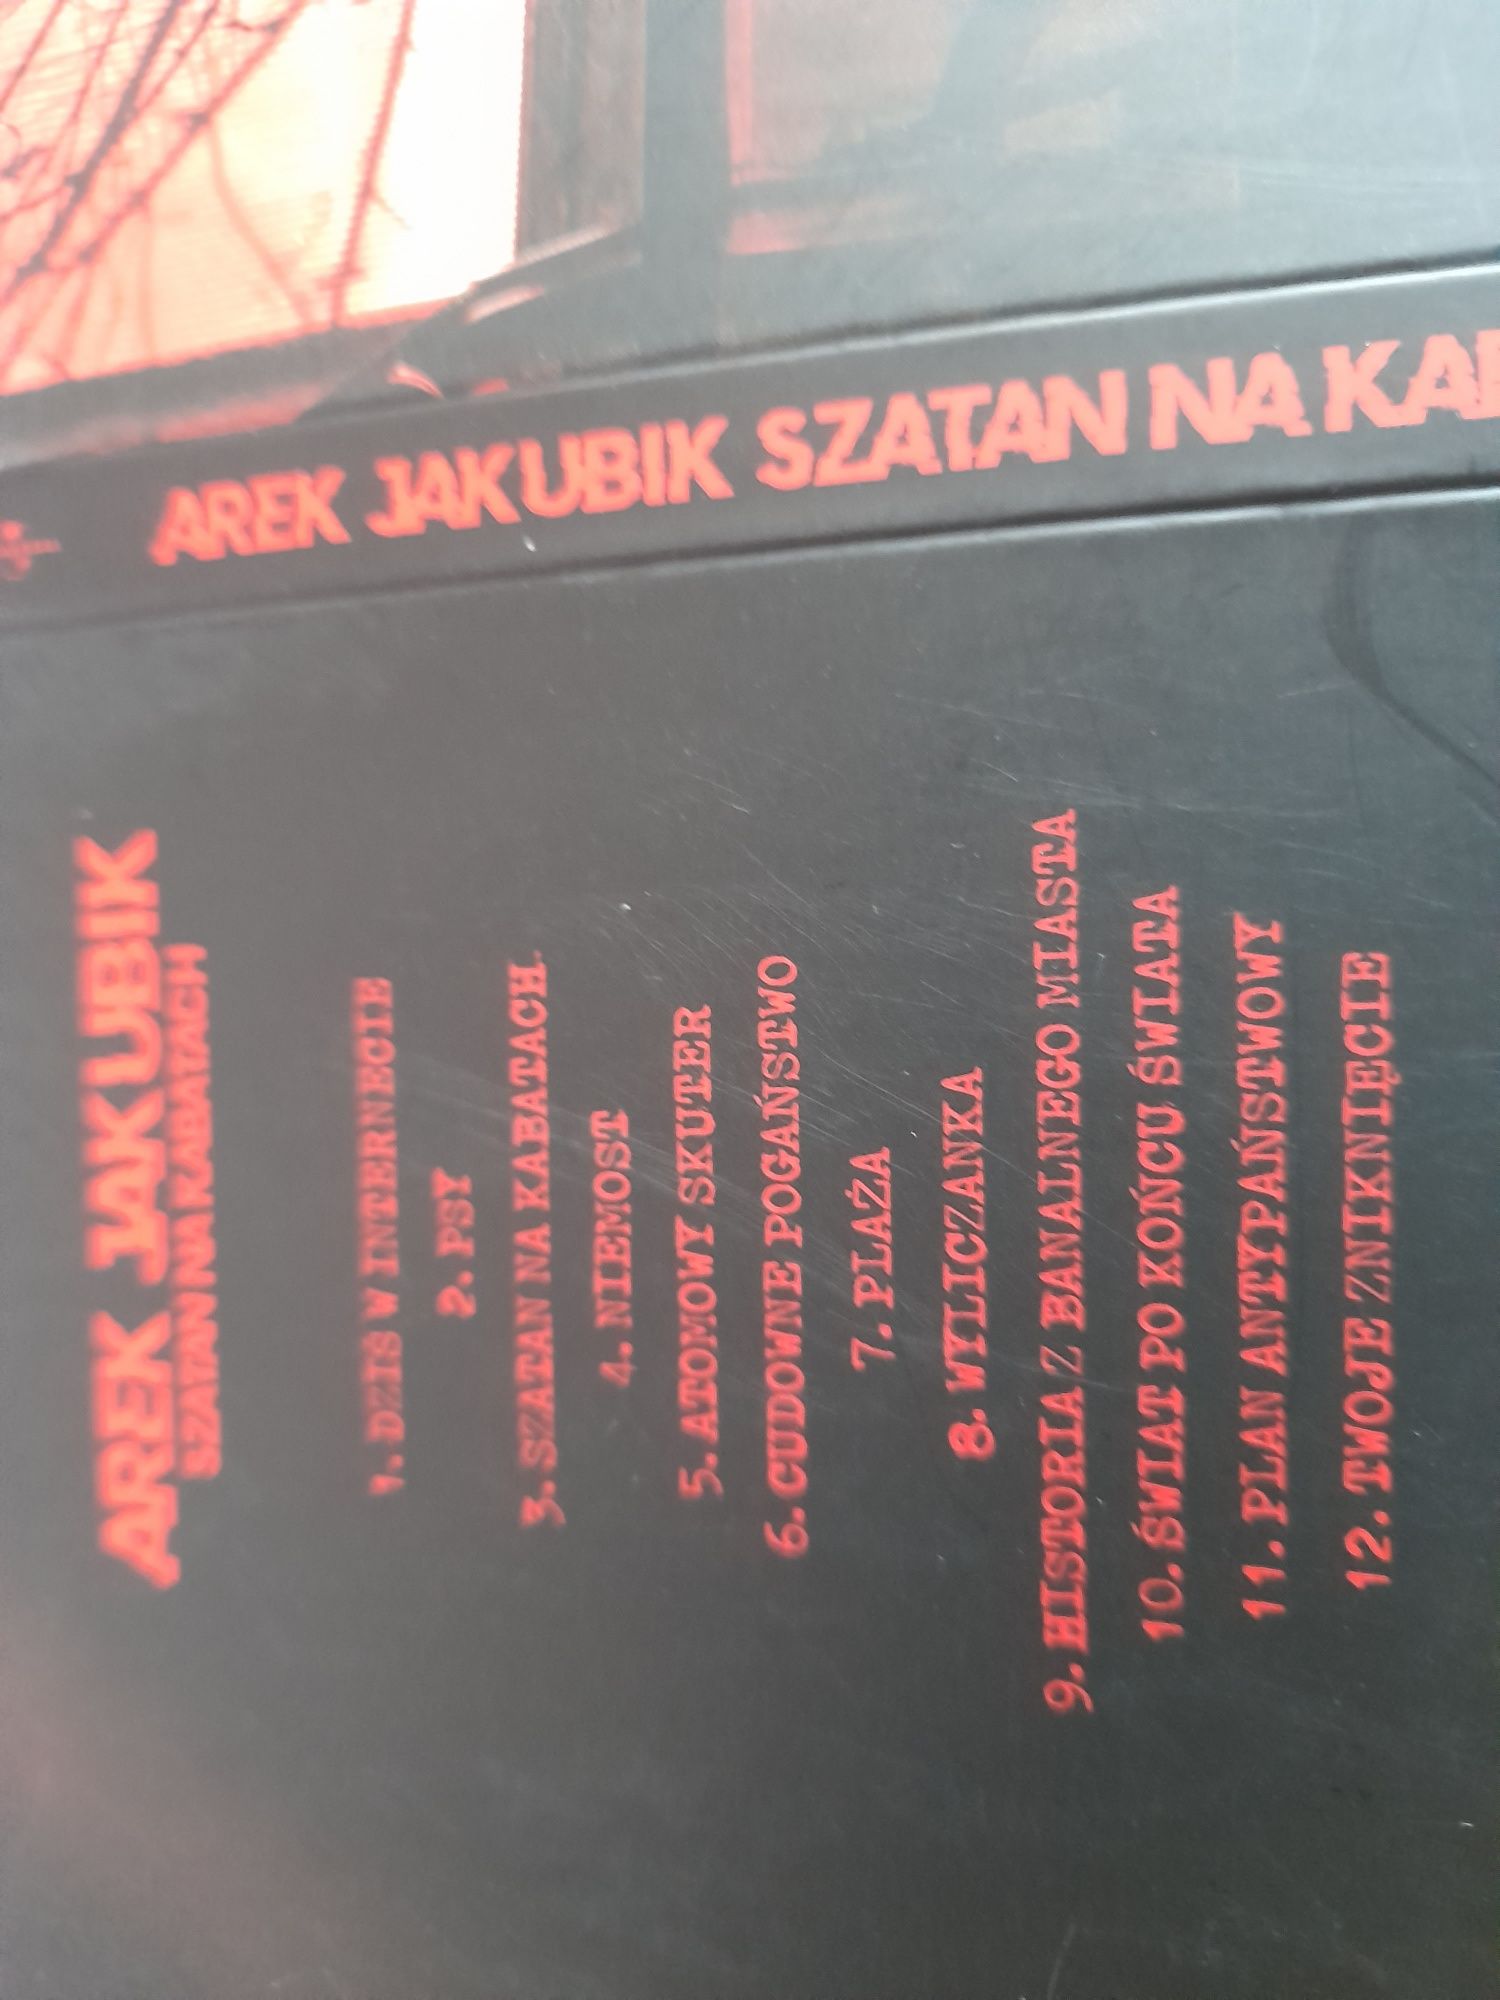 Płyta "Arek Jakubik Szatan na Kabatach"